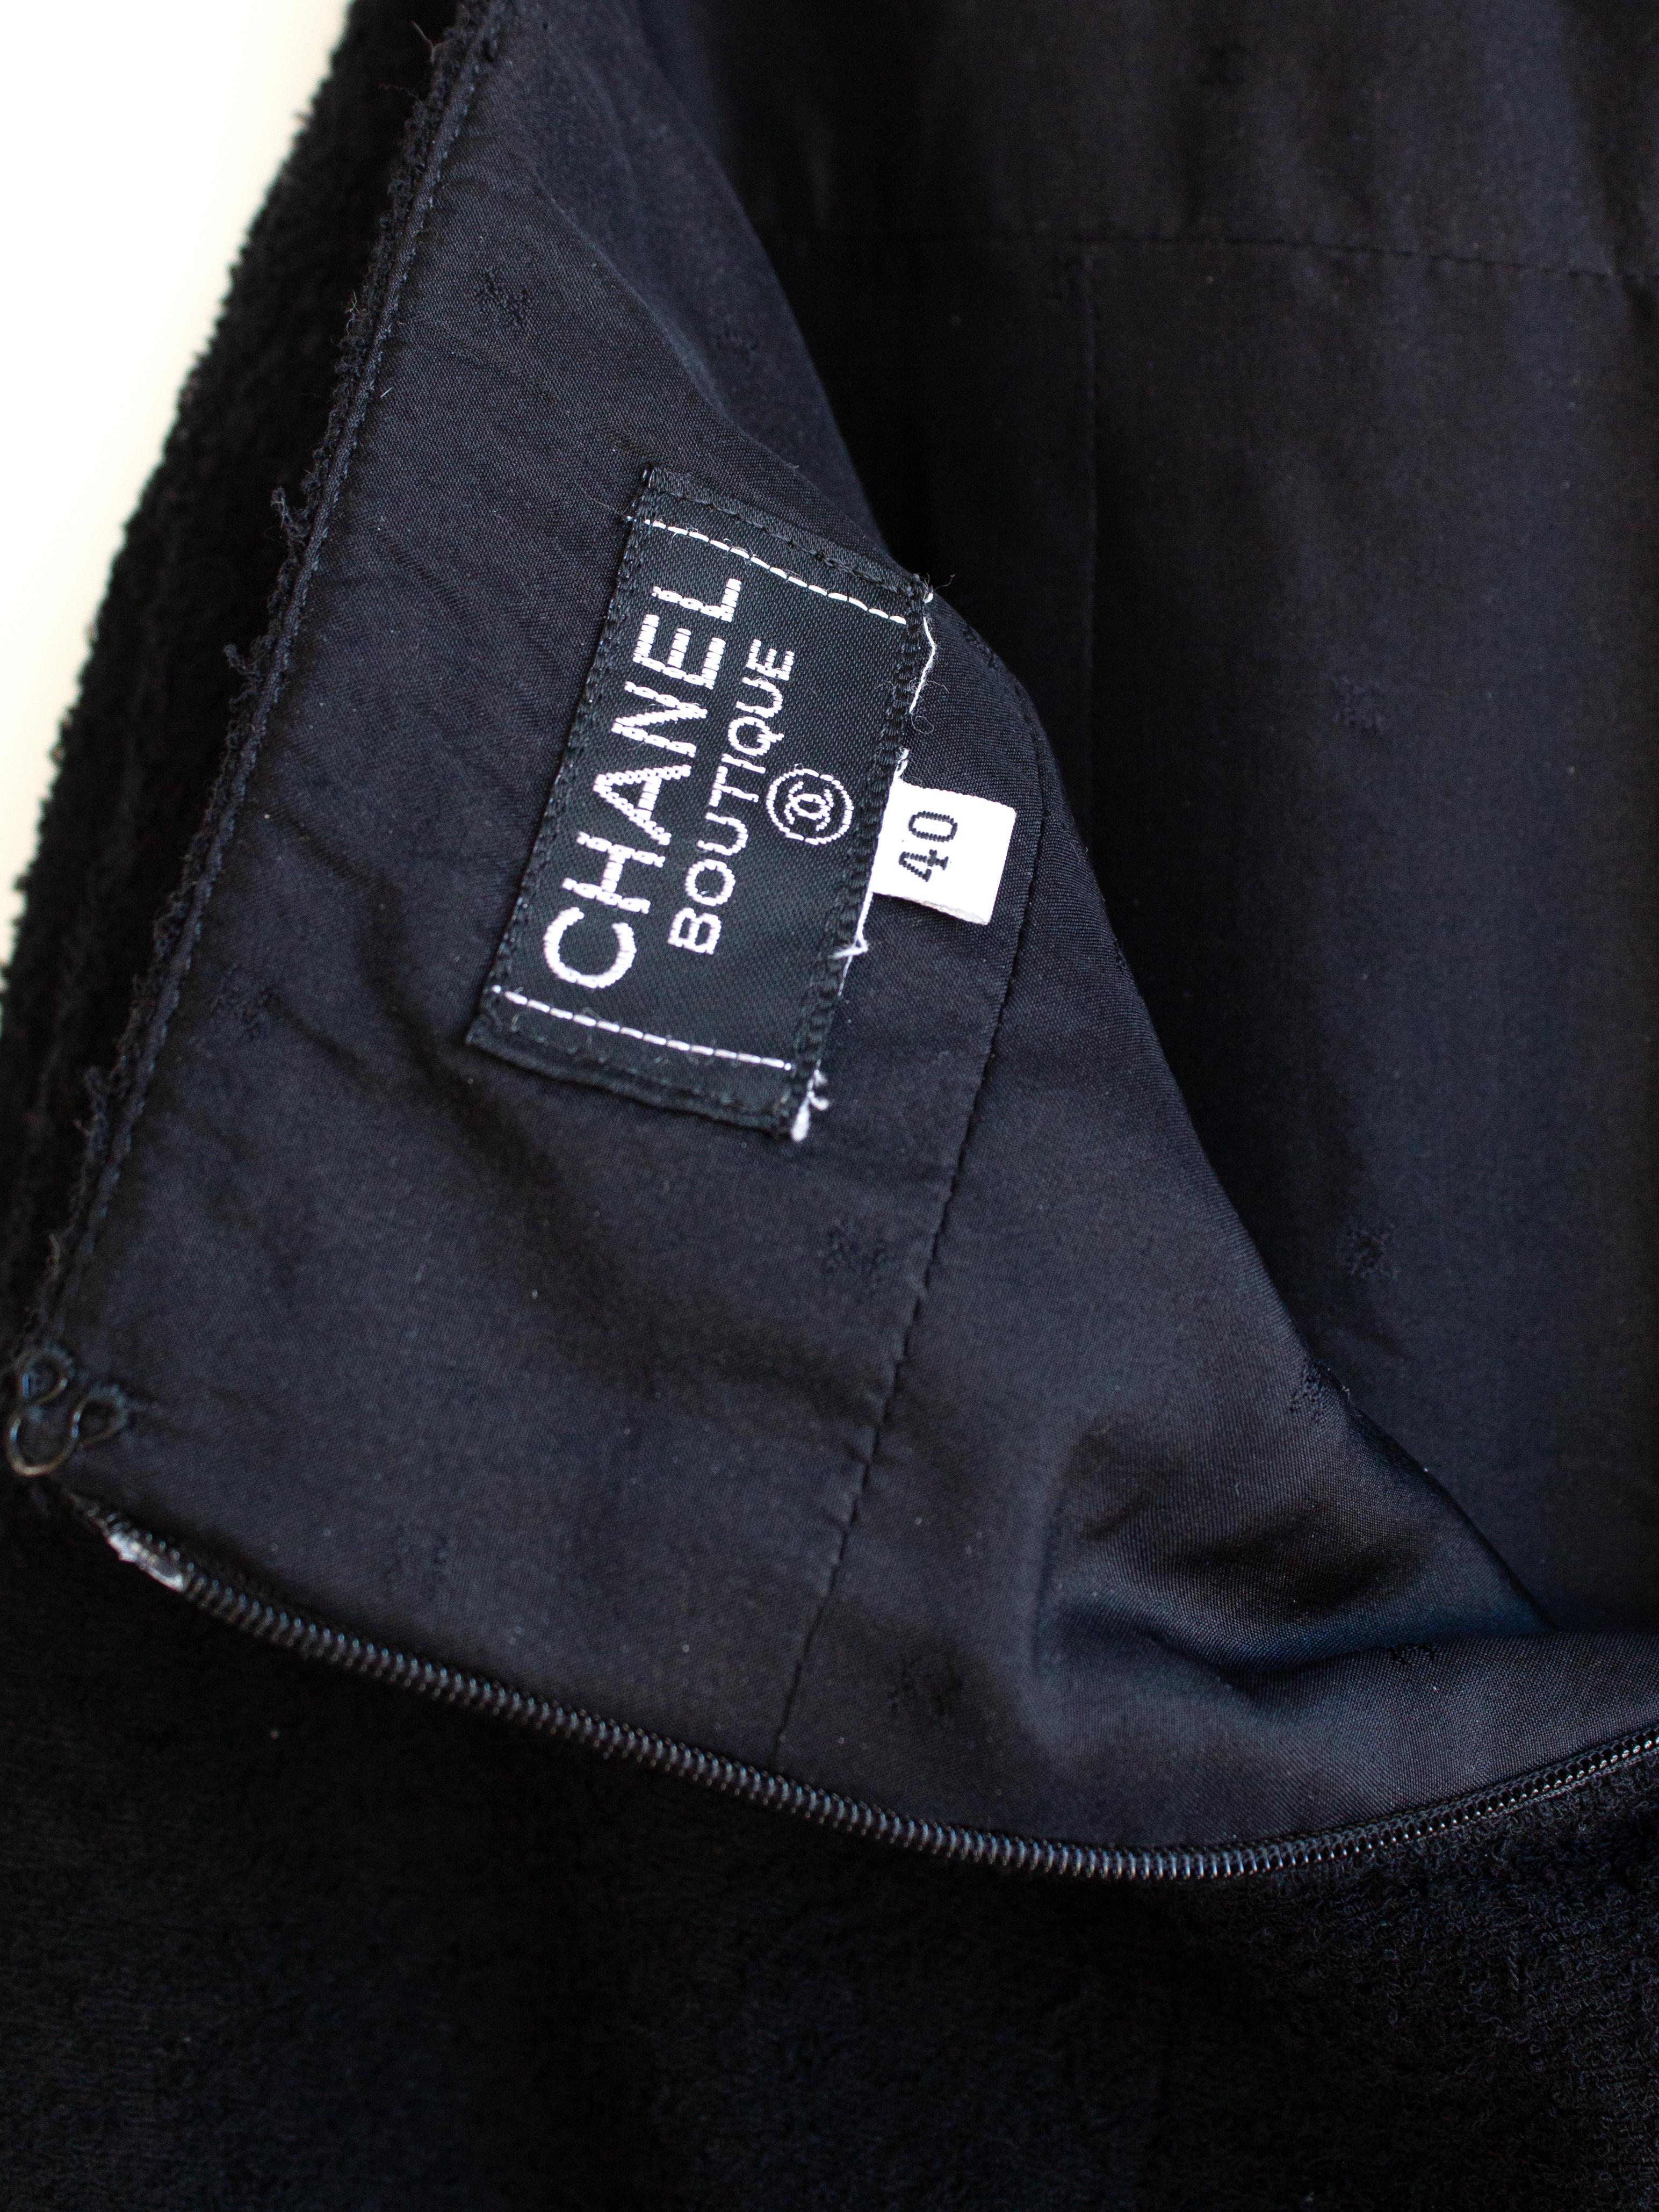 Tailleur jupe emblématique Chanel Vintage S/S1994 bleu marine et blanc bordé de bordures 94P 13